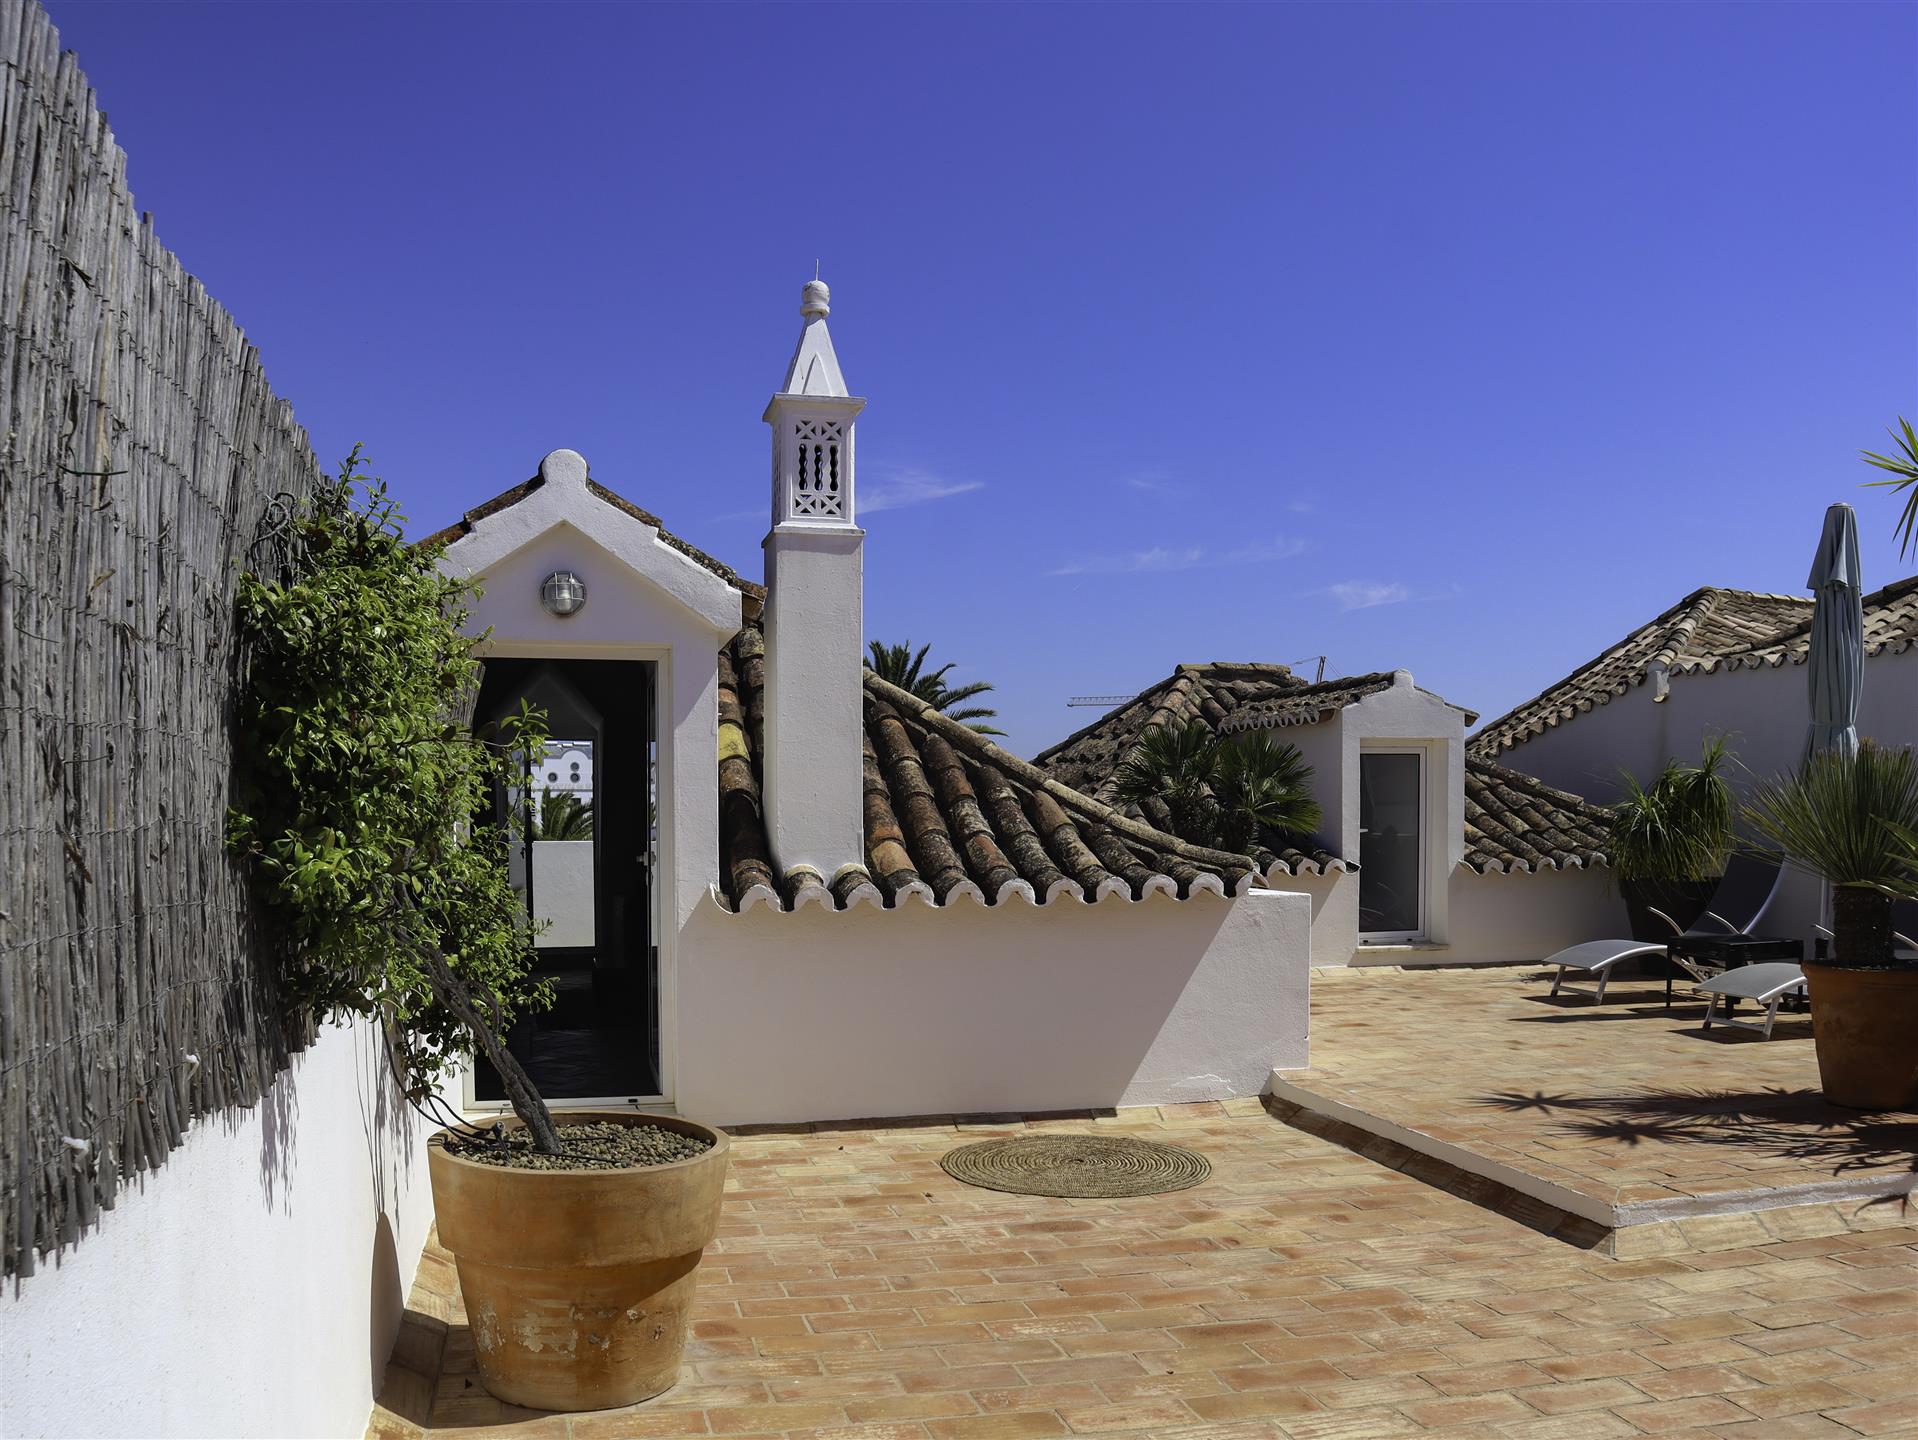 Appartement met 4 slaapkamers - Historisch gebied - Downtown Tavira - Algarve